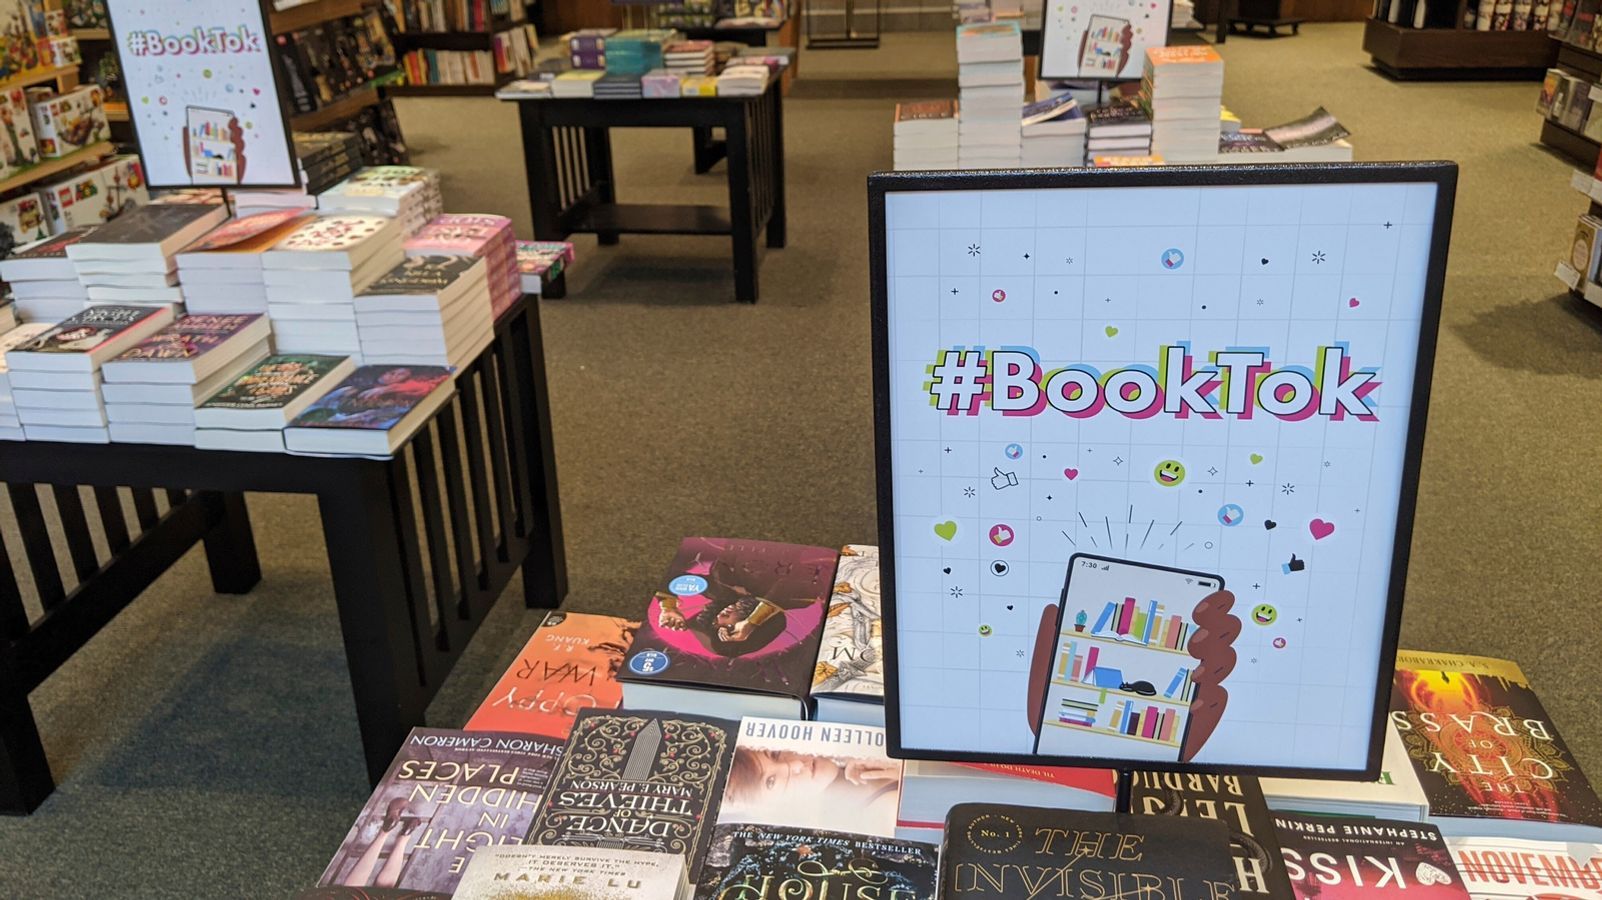 Librerías y ferias han adaptado algunas estanterías con los libros más recomendados por #BookTok, por ejemplo.